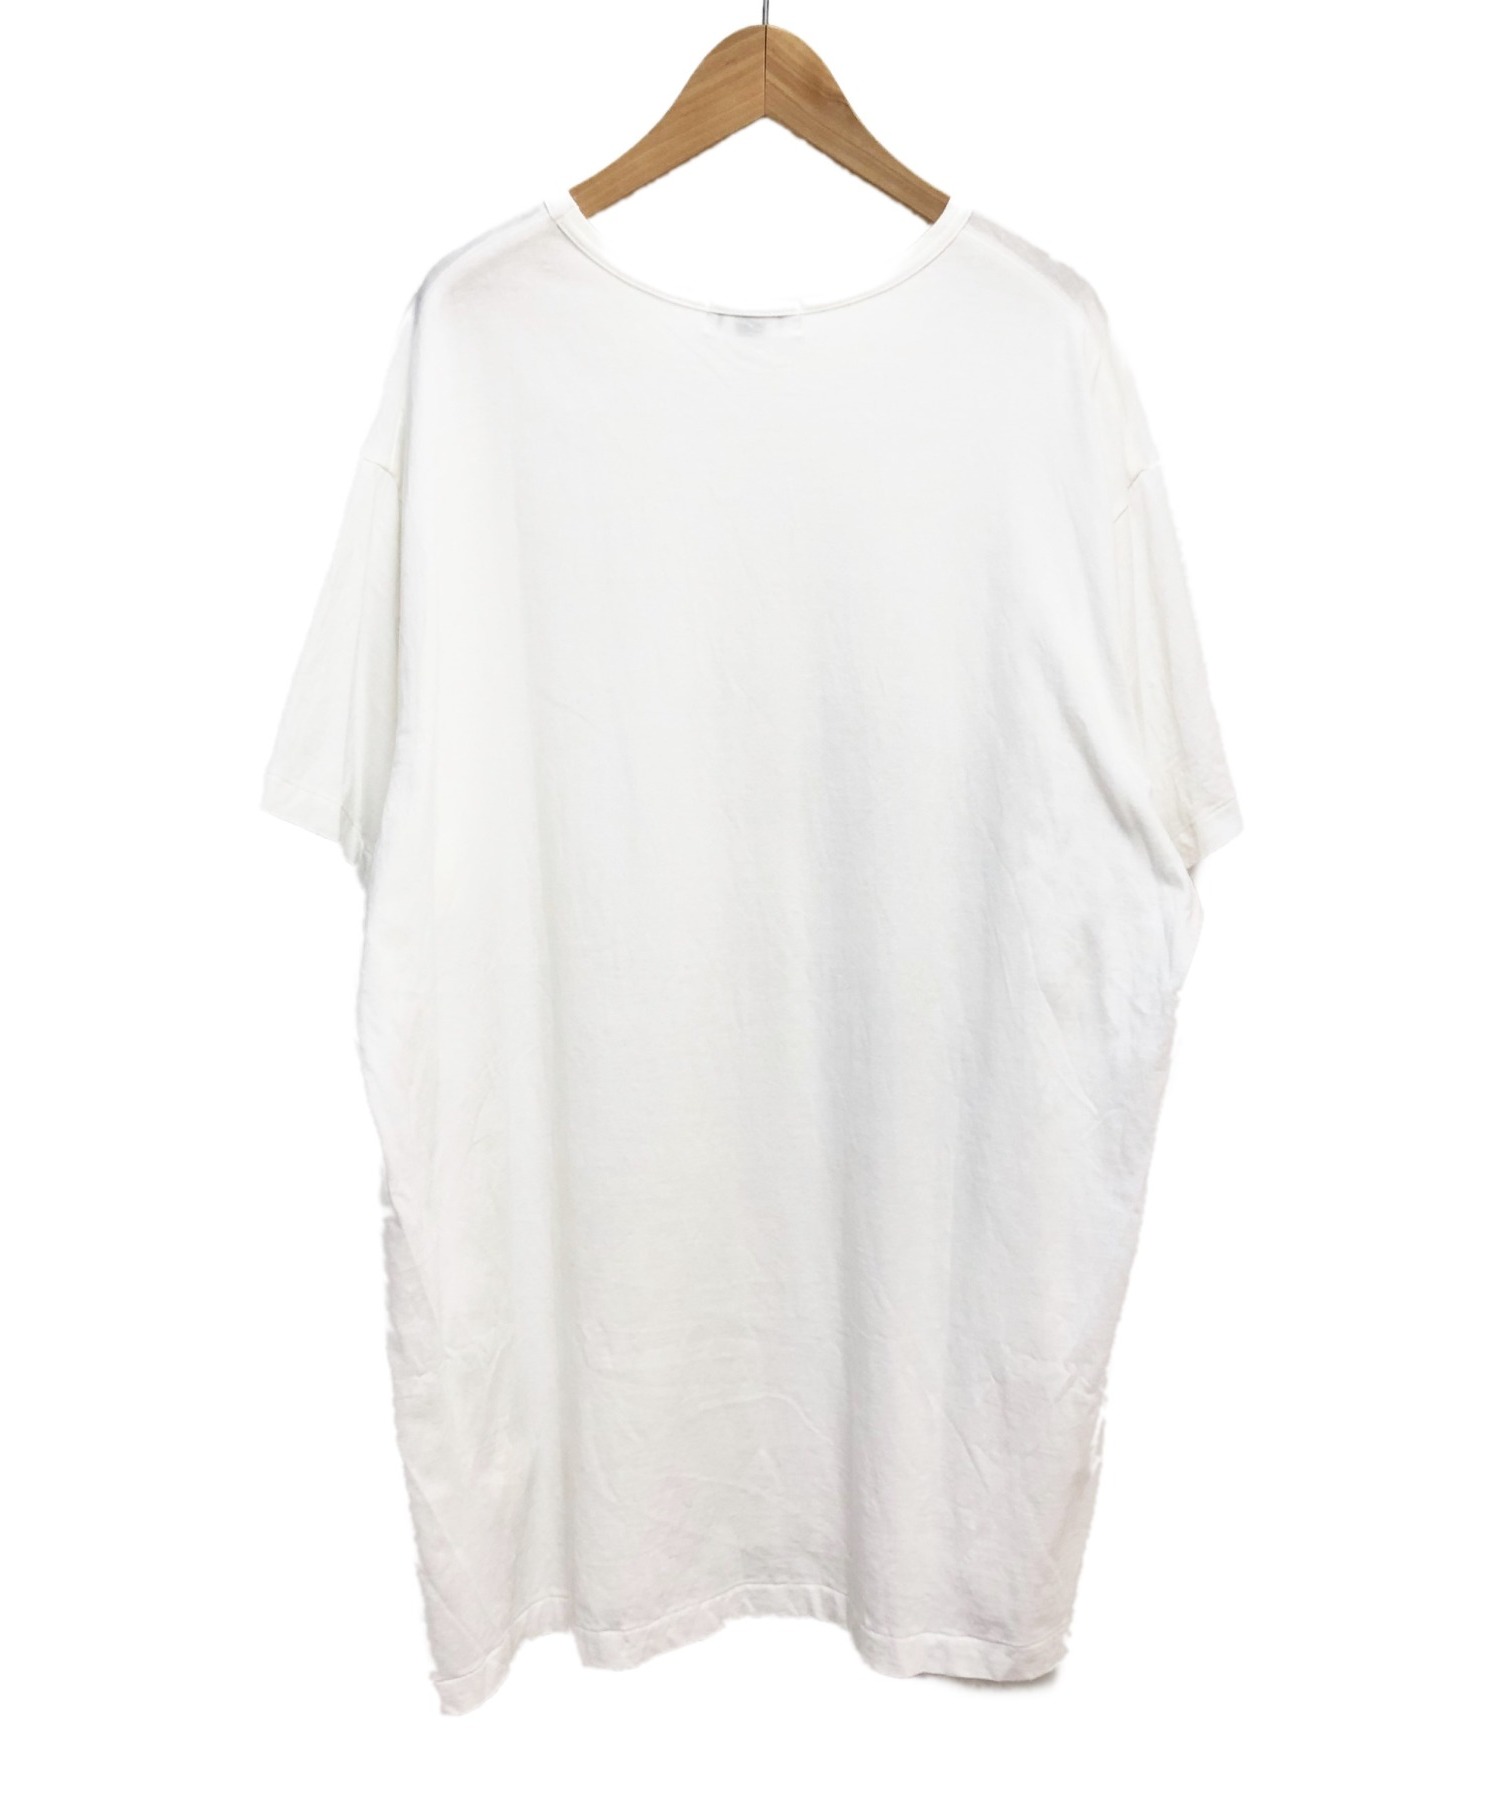 Yohji Yamamoto pour homme (ヨウジヤマモトプールオム) 英字プリント半袖Tシャツ ホワイト サイズ:3